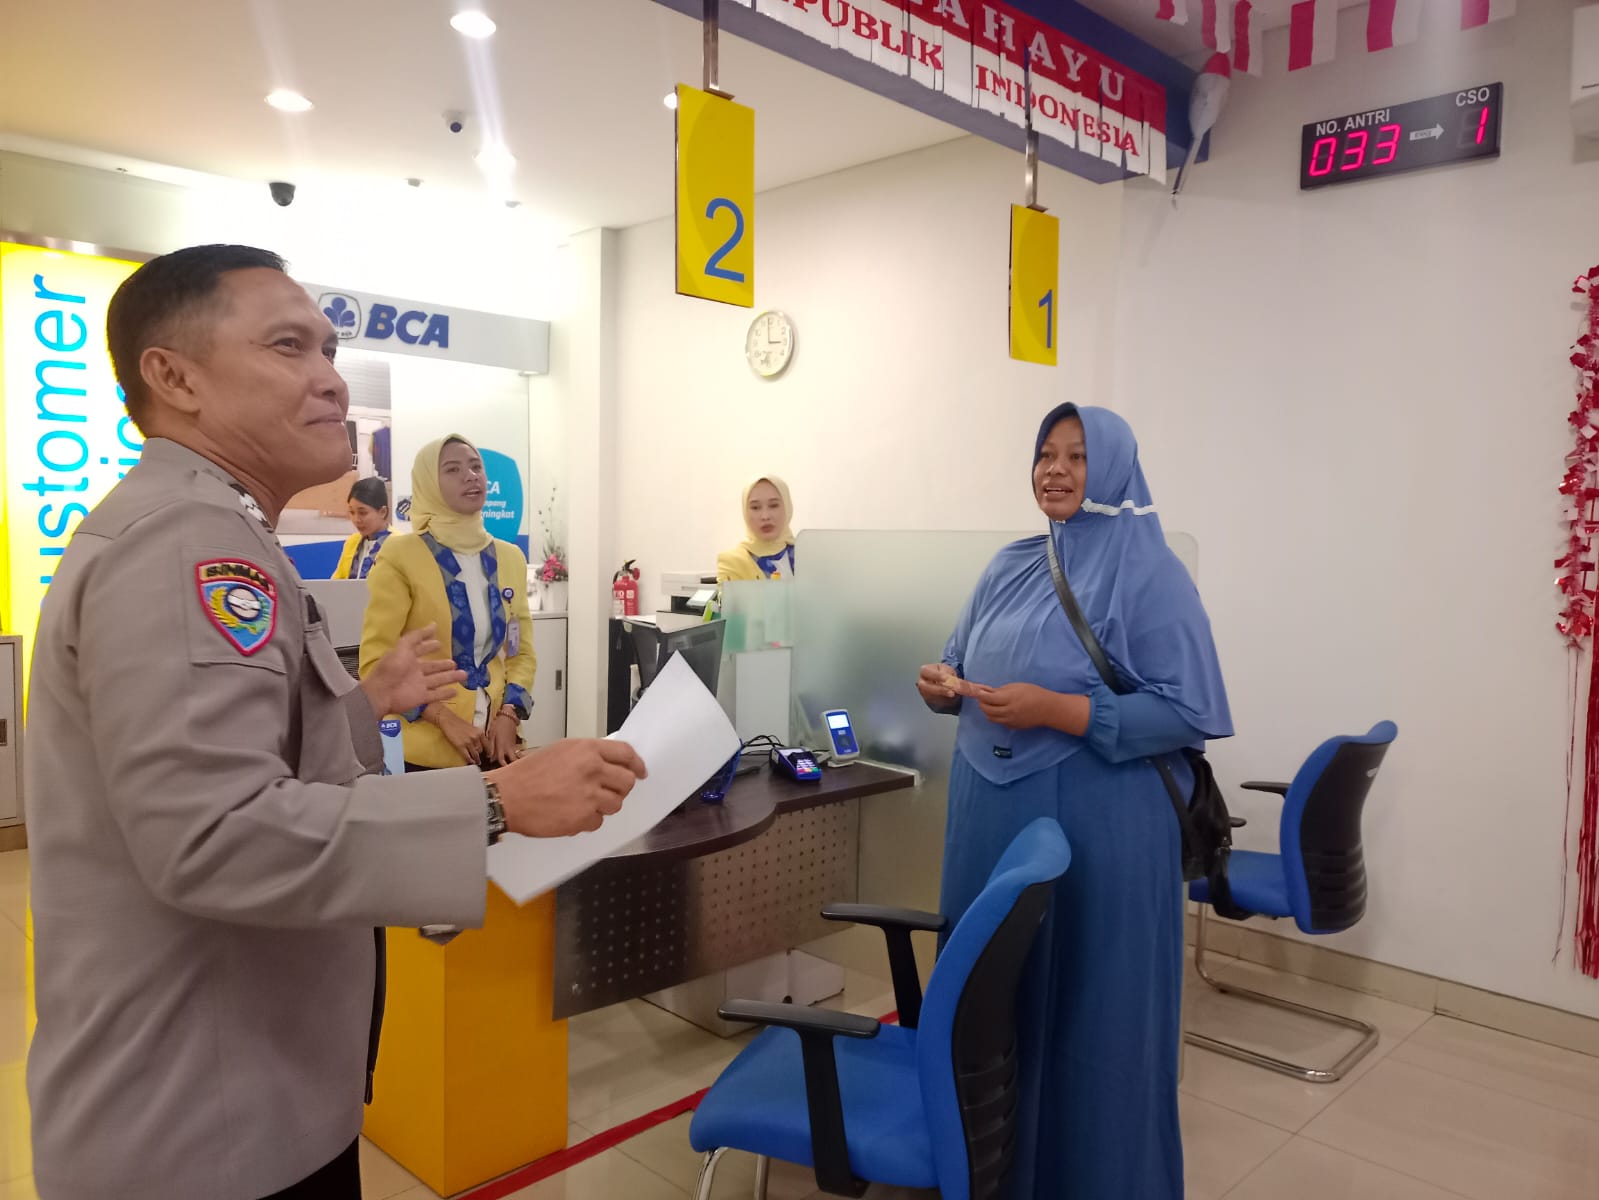 Aiptu Mauladi Polisi Polres Lampung Utara, Temukan Uang di ATM dan Kembalikan Kepemiliknya